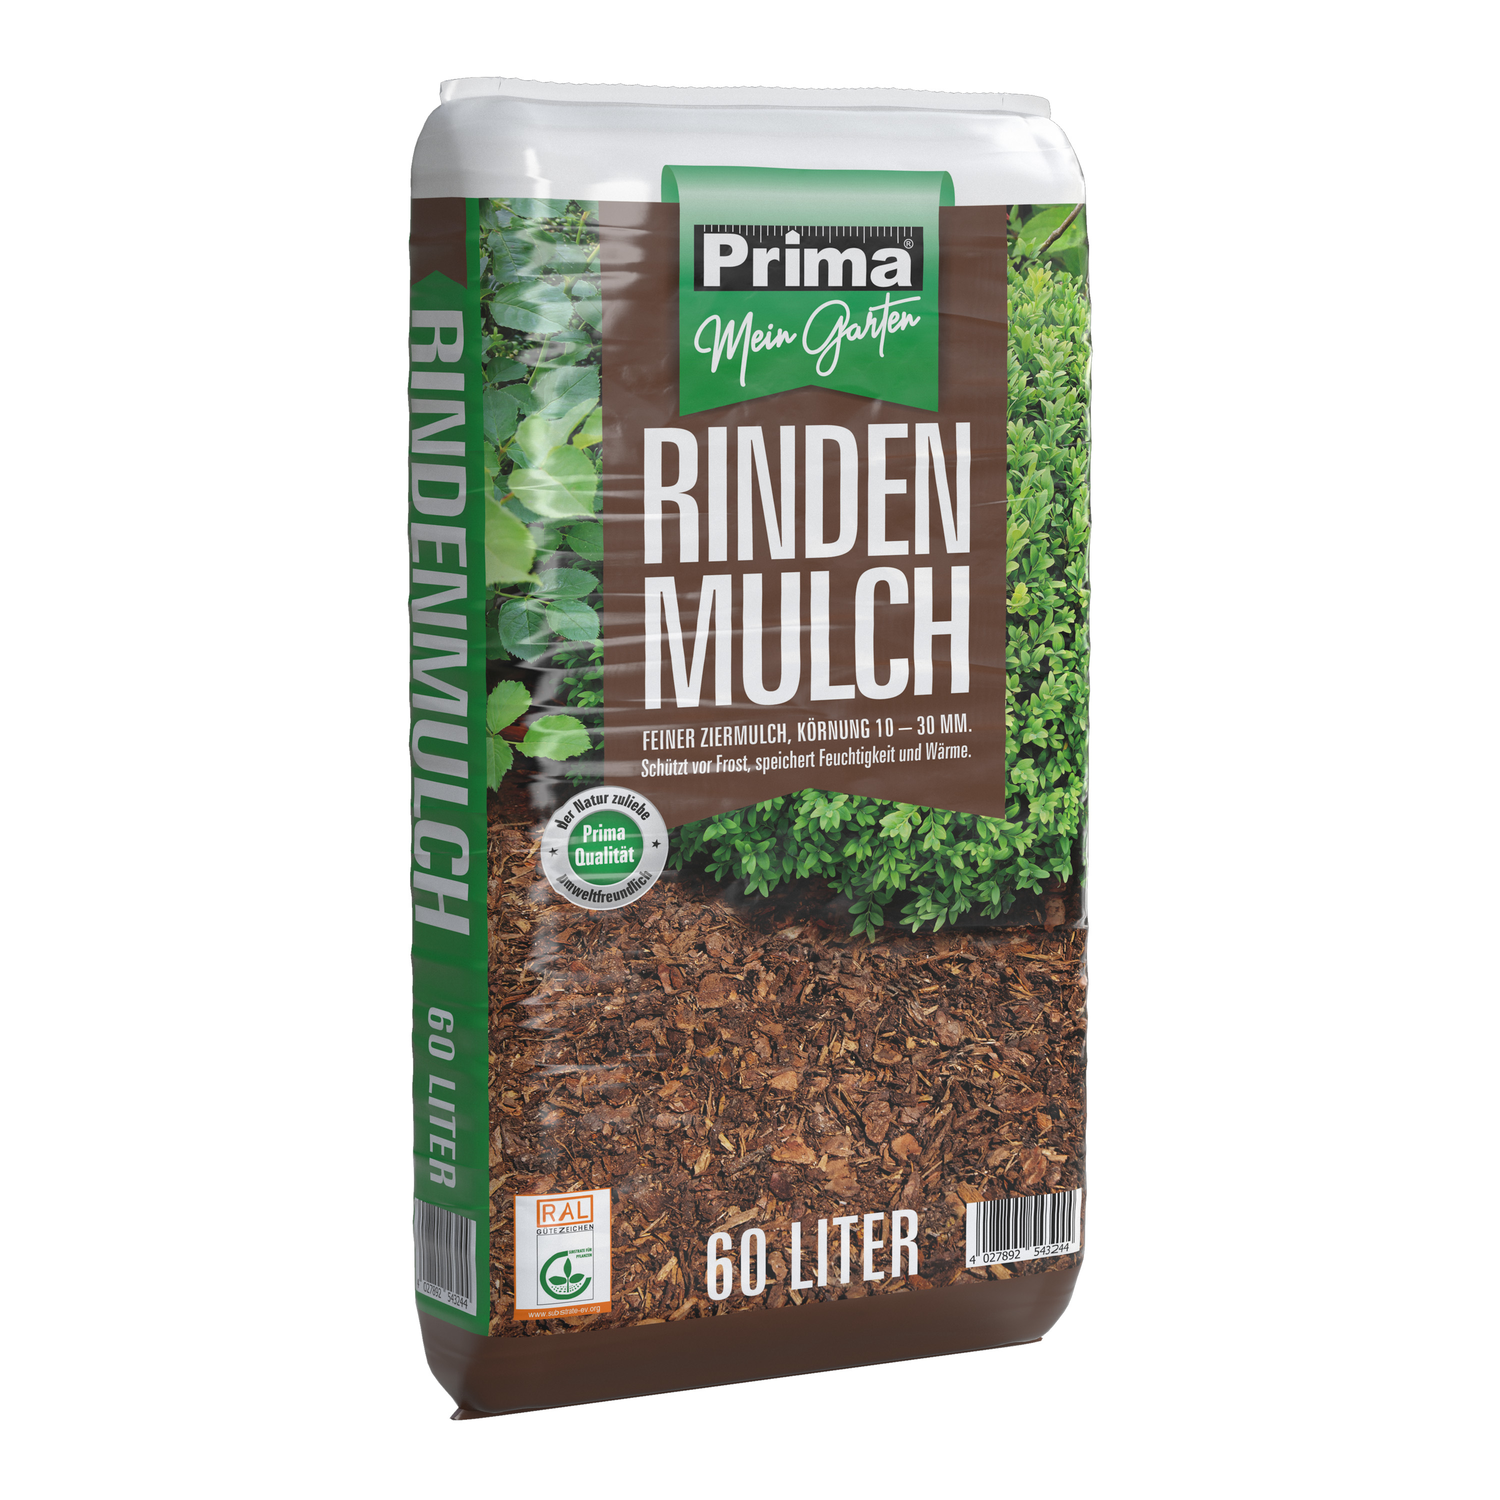 PRIMA Rindenmulch 10-30 mm, 60 Liter Bodenhilfsstoff